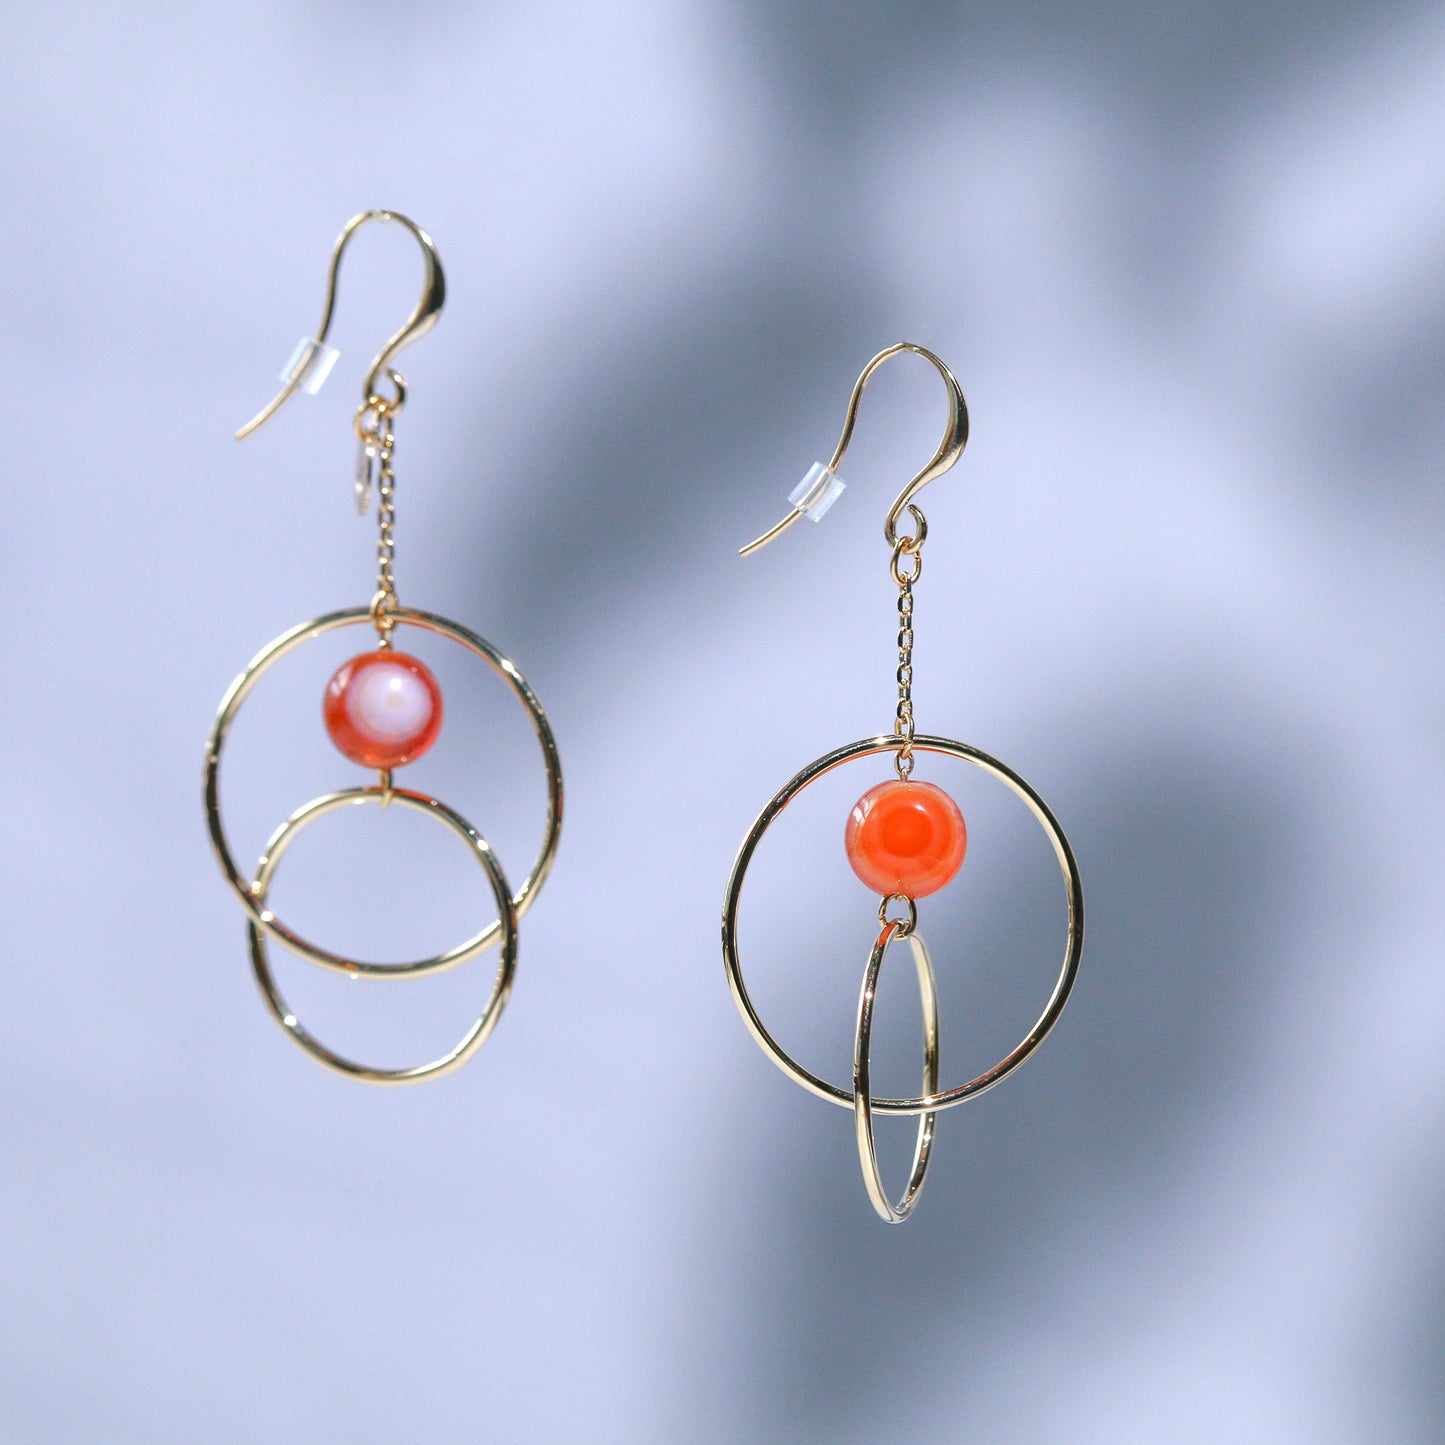 Metal hoop and orange gate earrings